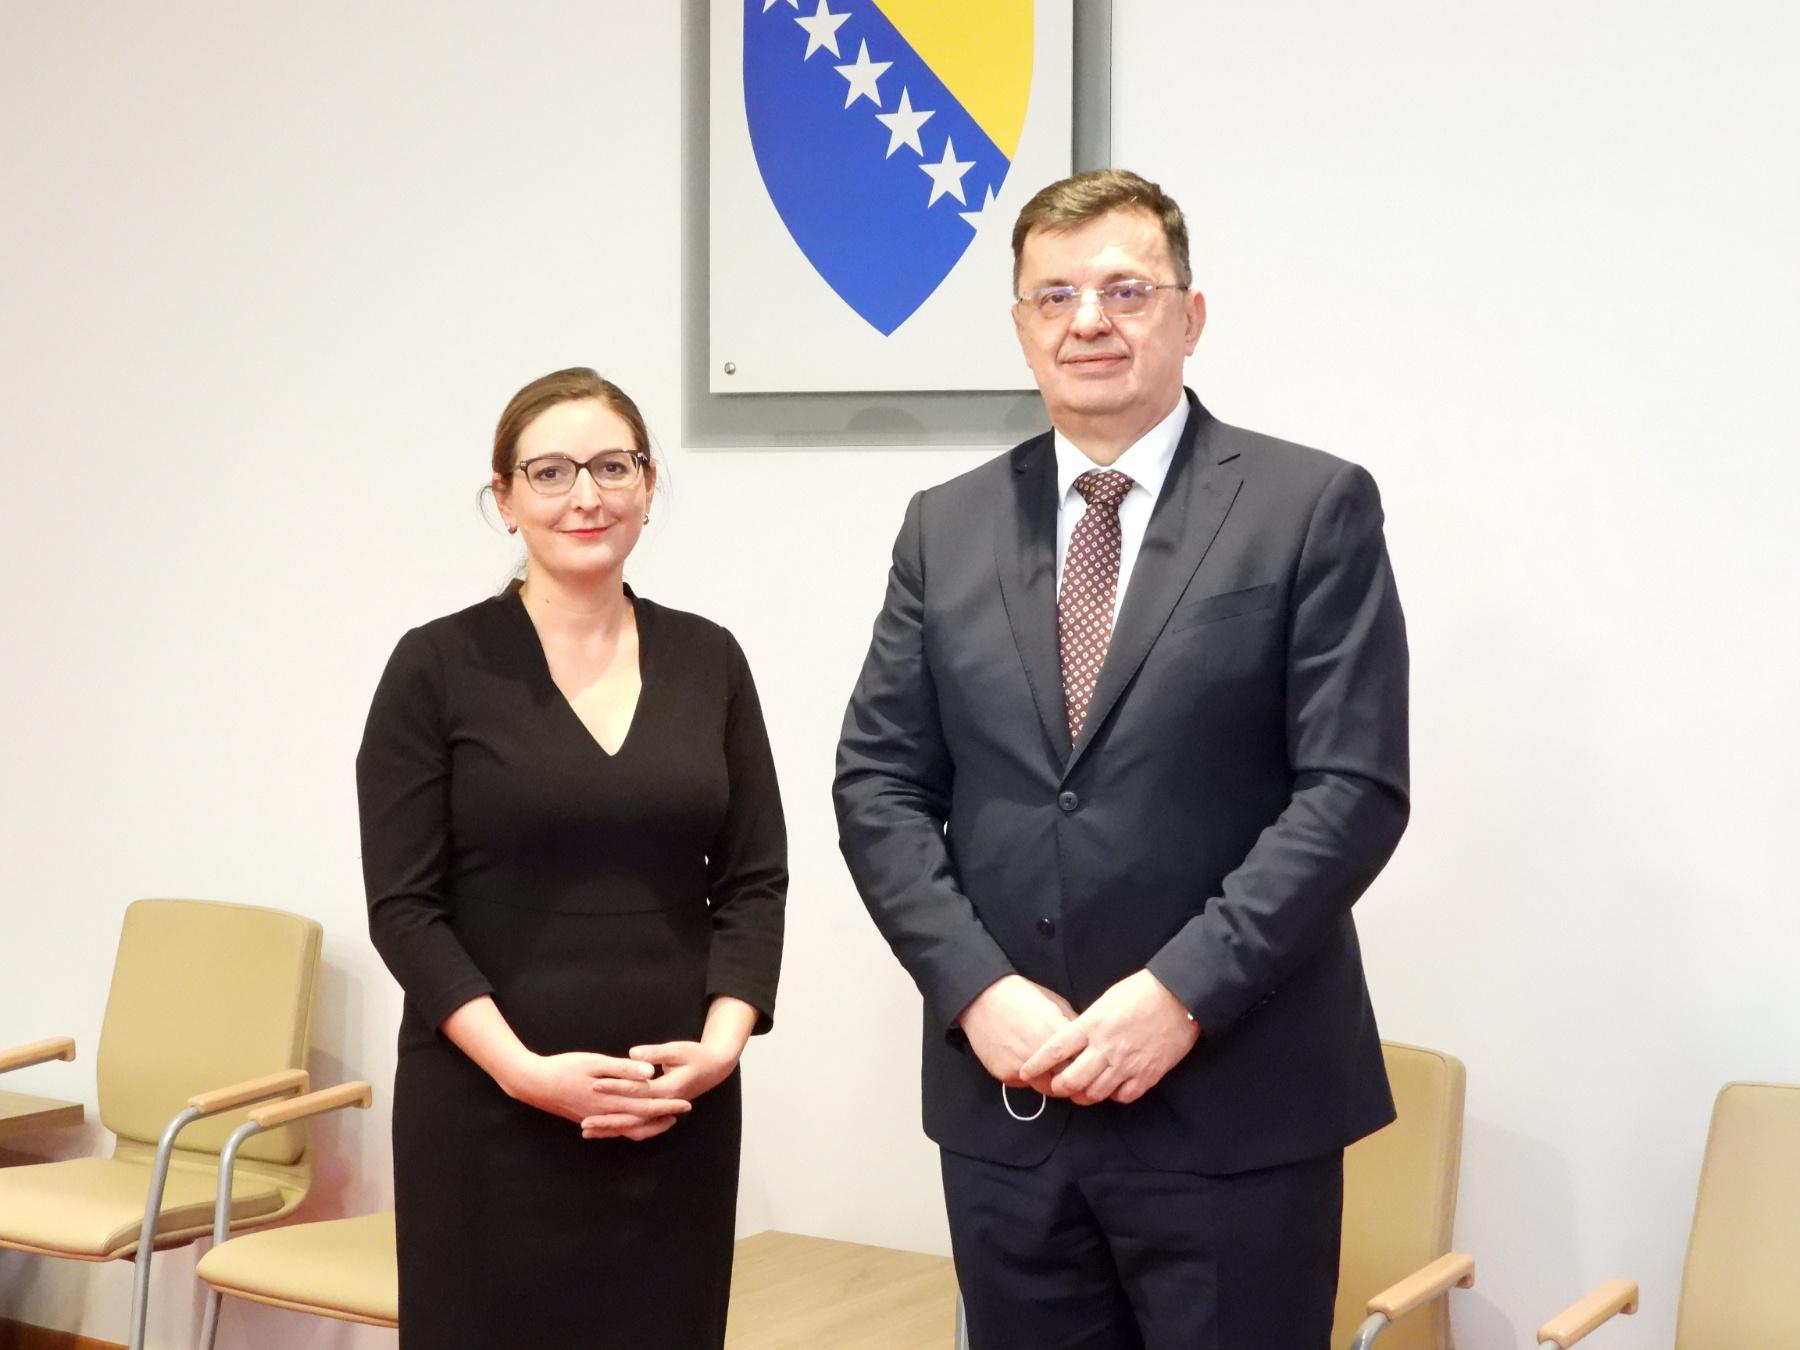 Tegeltija razgovarao sa šeficom Misije EBRD-a u BiH